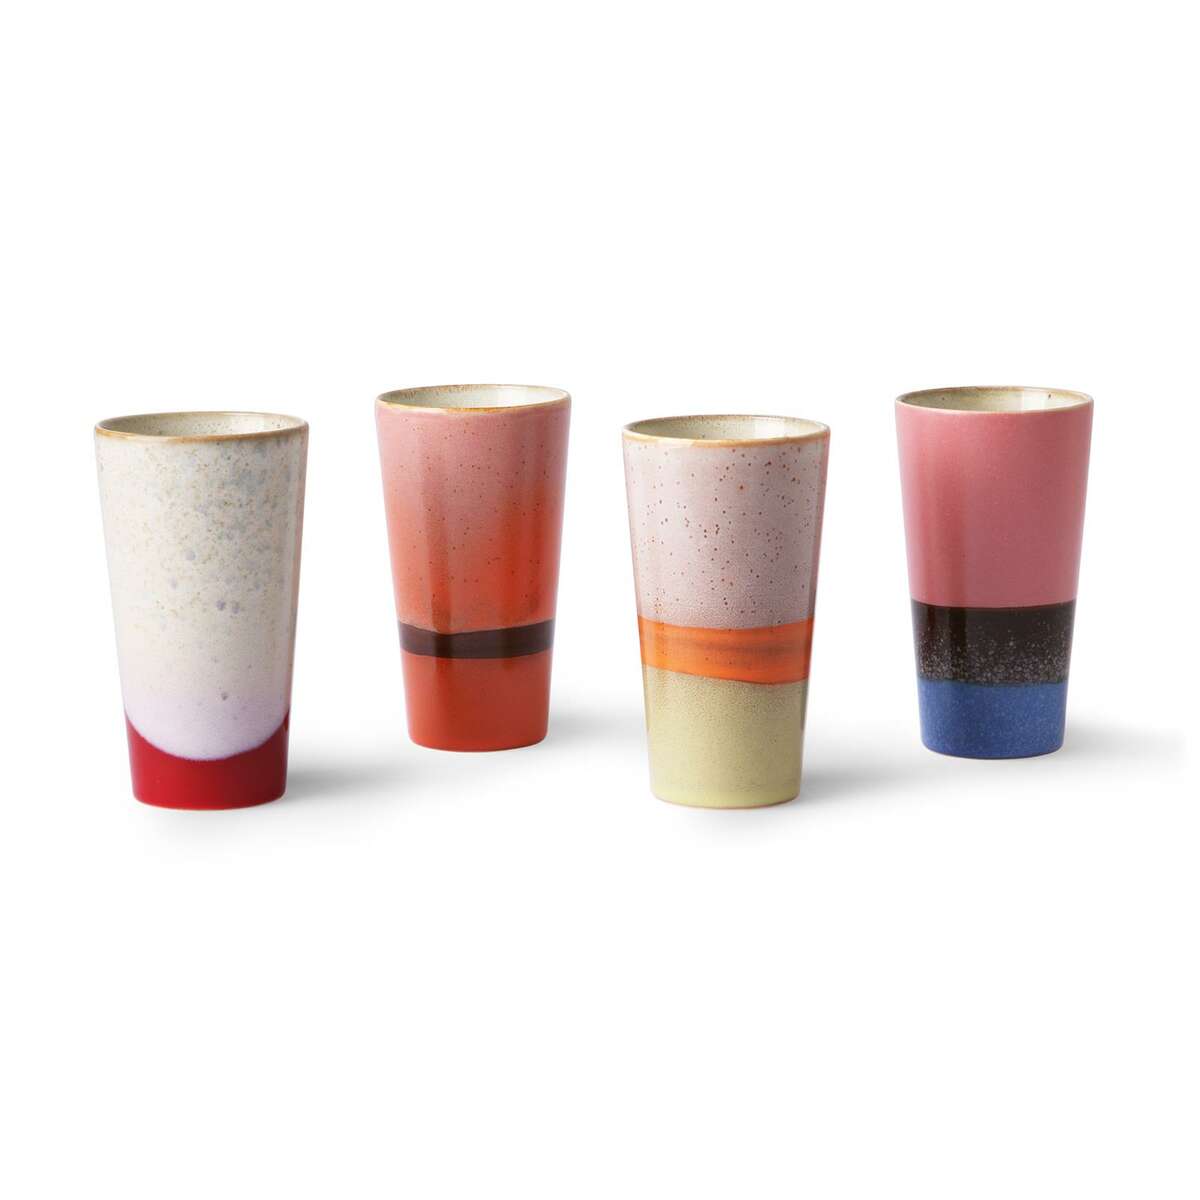 Set of 4 70's ceramic mugs for latte